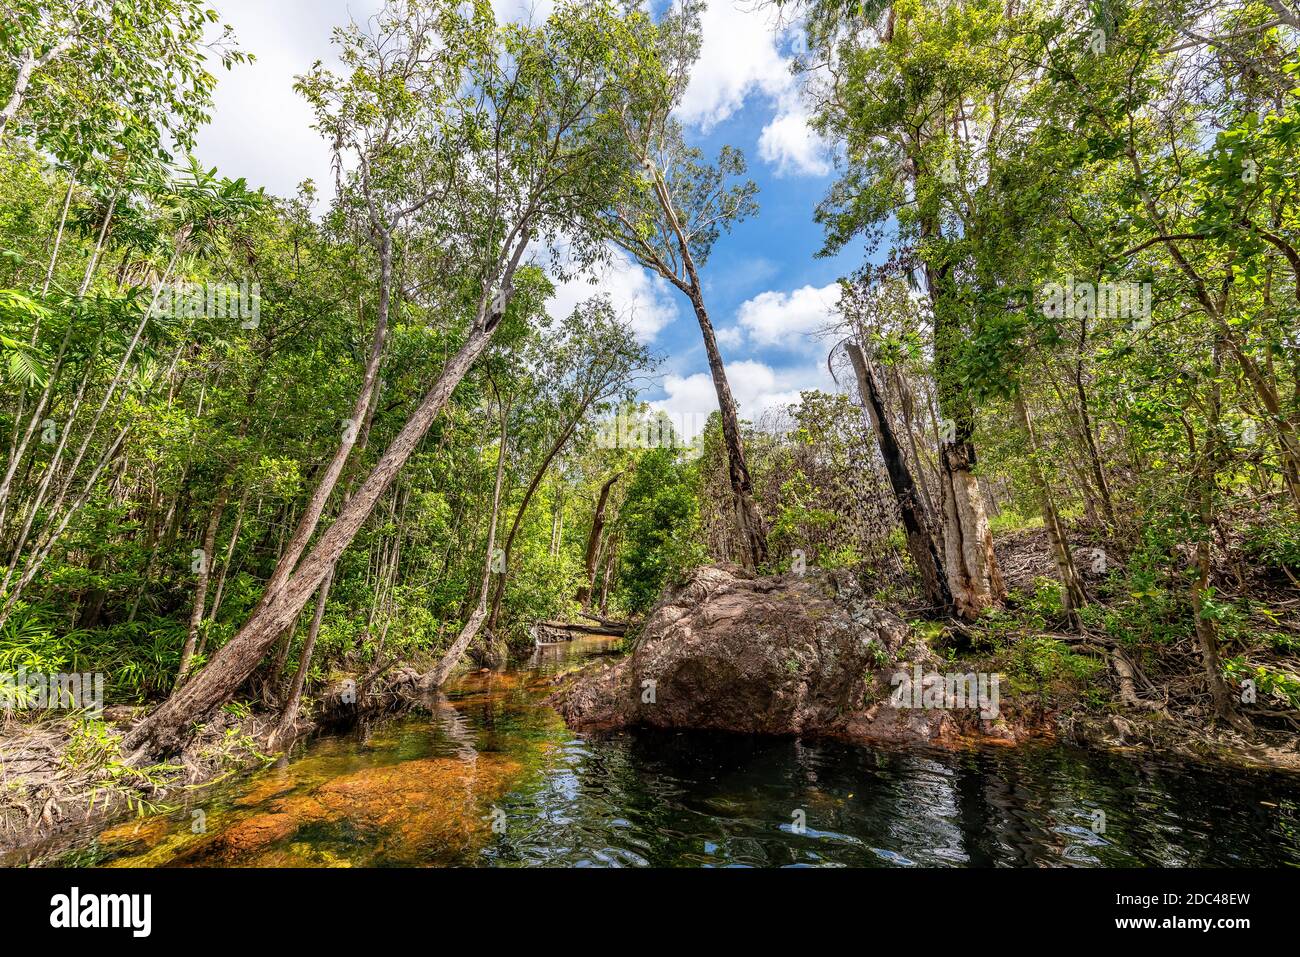 Les trous de Buley Rock en cascade avec une végétation luxuriante dans le Bush et des arbres tombés dans le parc national de Litchfield, dans la partie supérieure tropicale de l'Australie. Banque D'Images